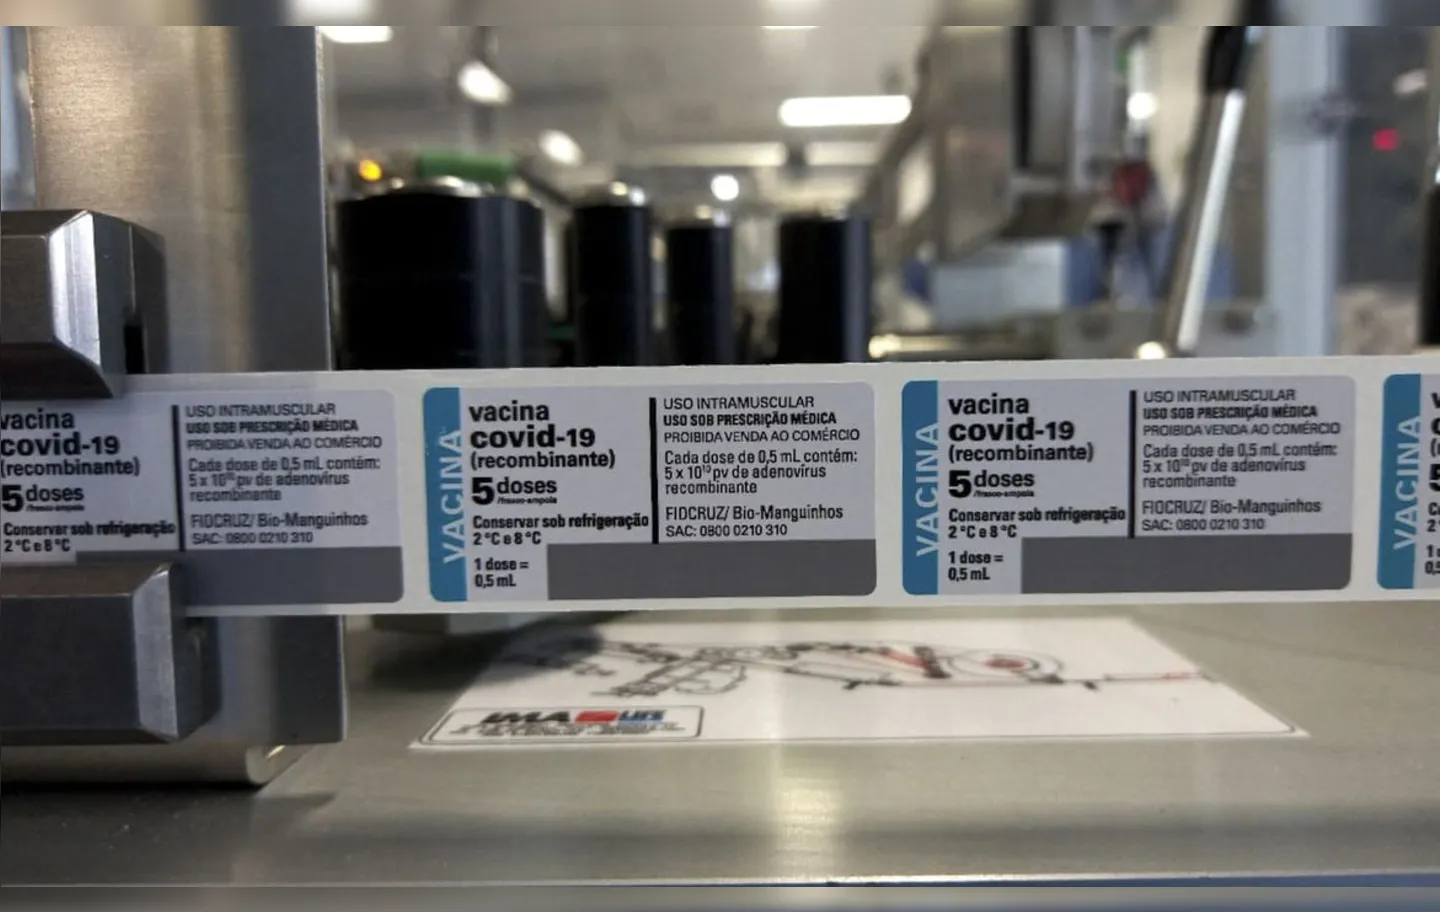 Carregamento com ingrediente farmacêutico ativo chegou ao aeroporto do Galeão | Foto: Divulgação | Fiocruz